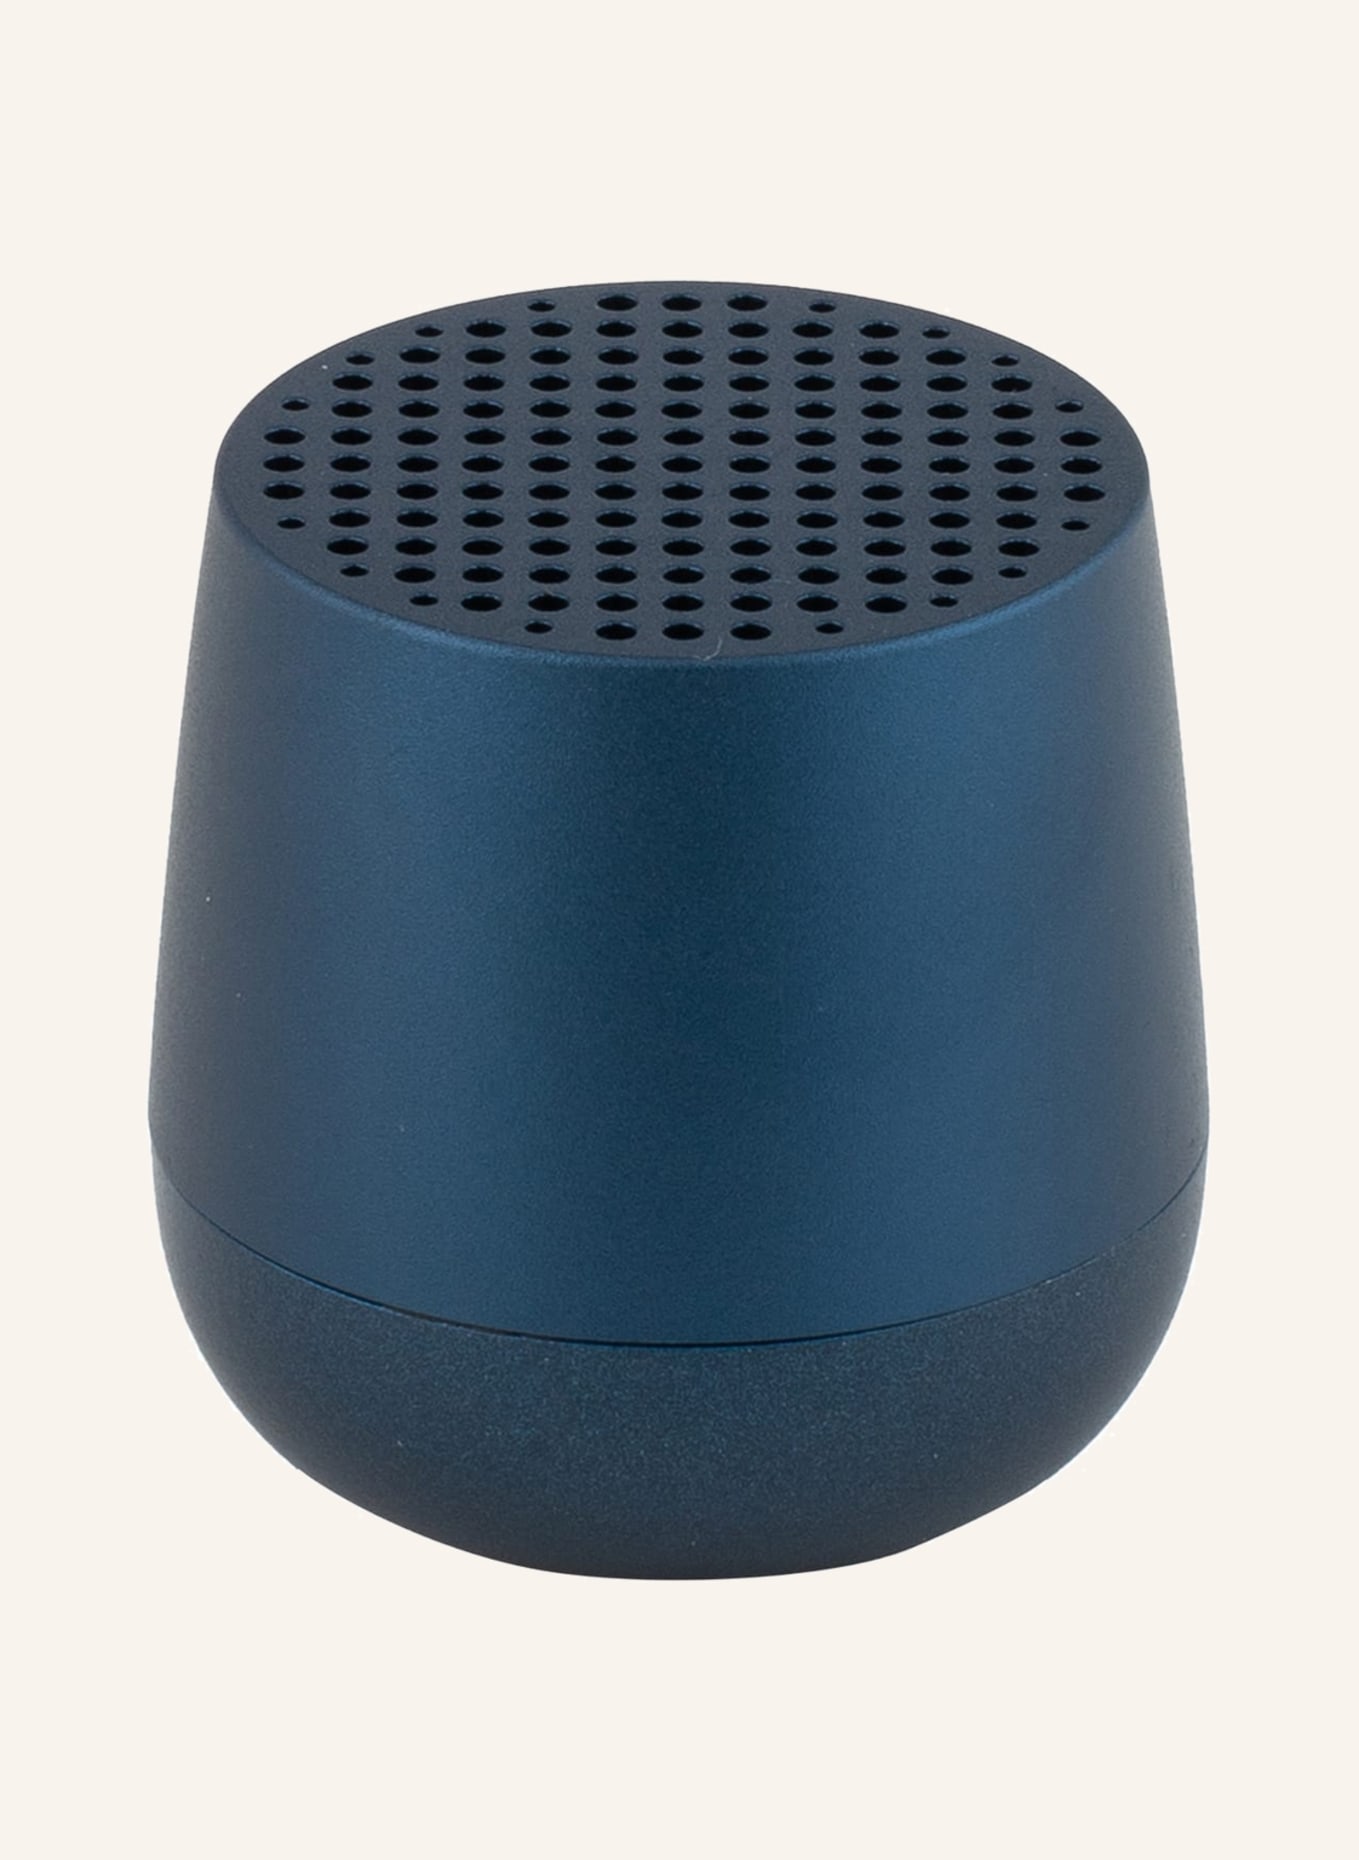 PRINTWORKS Bluetooth-Lautsprecher MINO, Farbe: DUNKELBLAU (Bild 1)